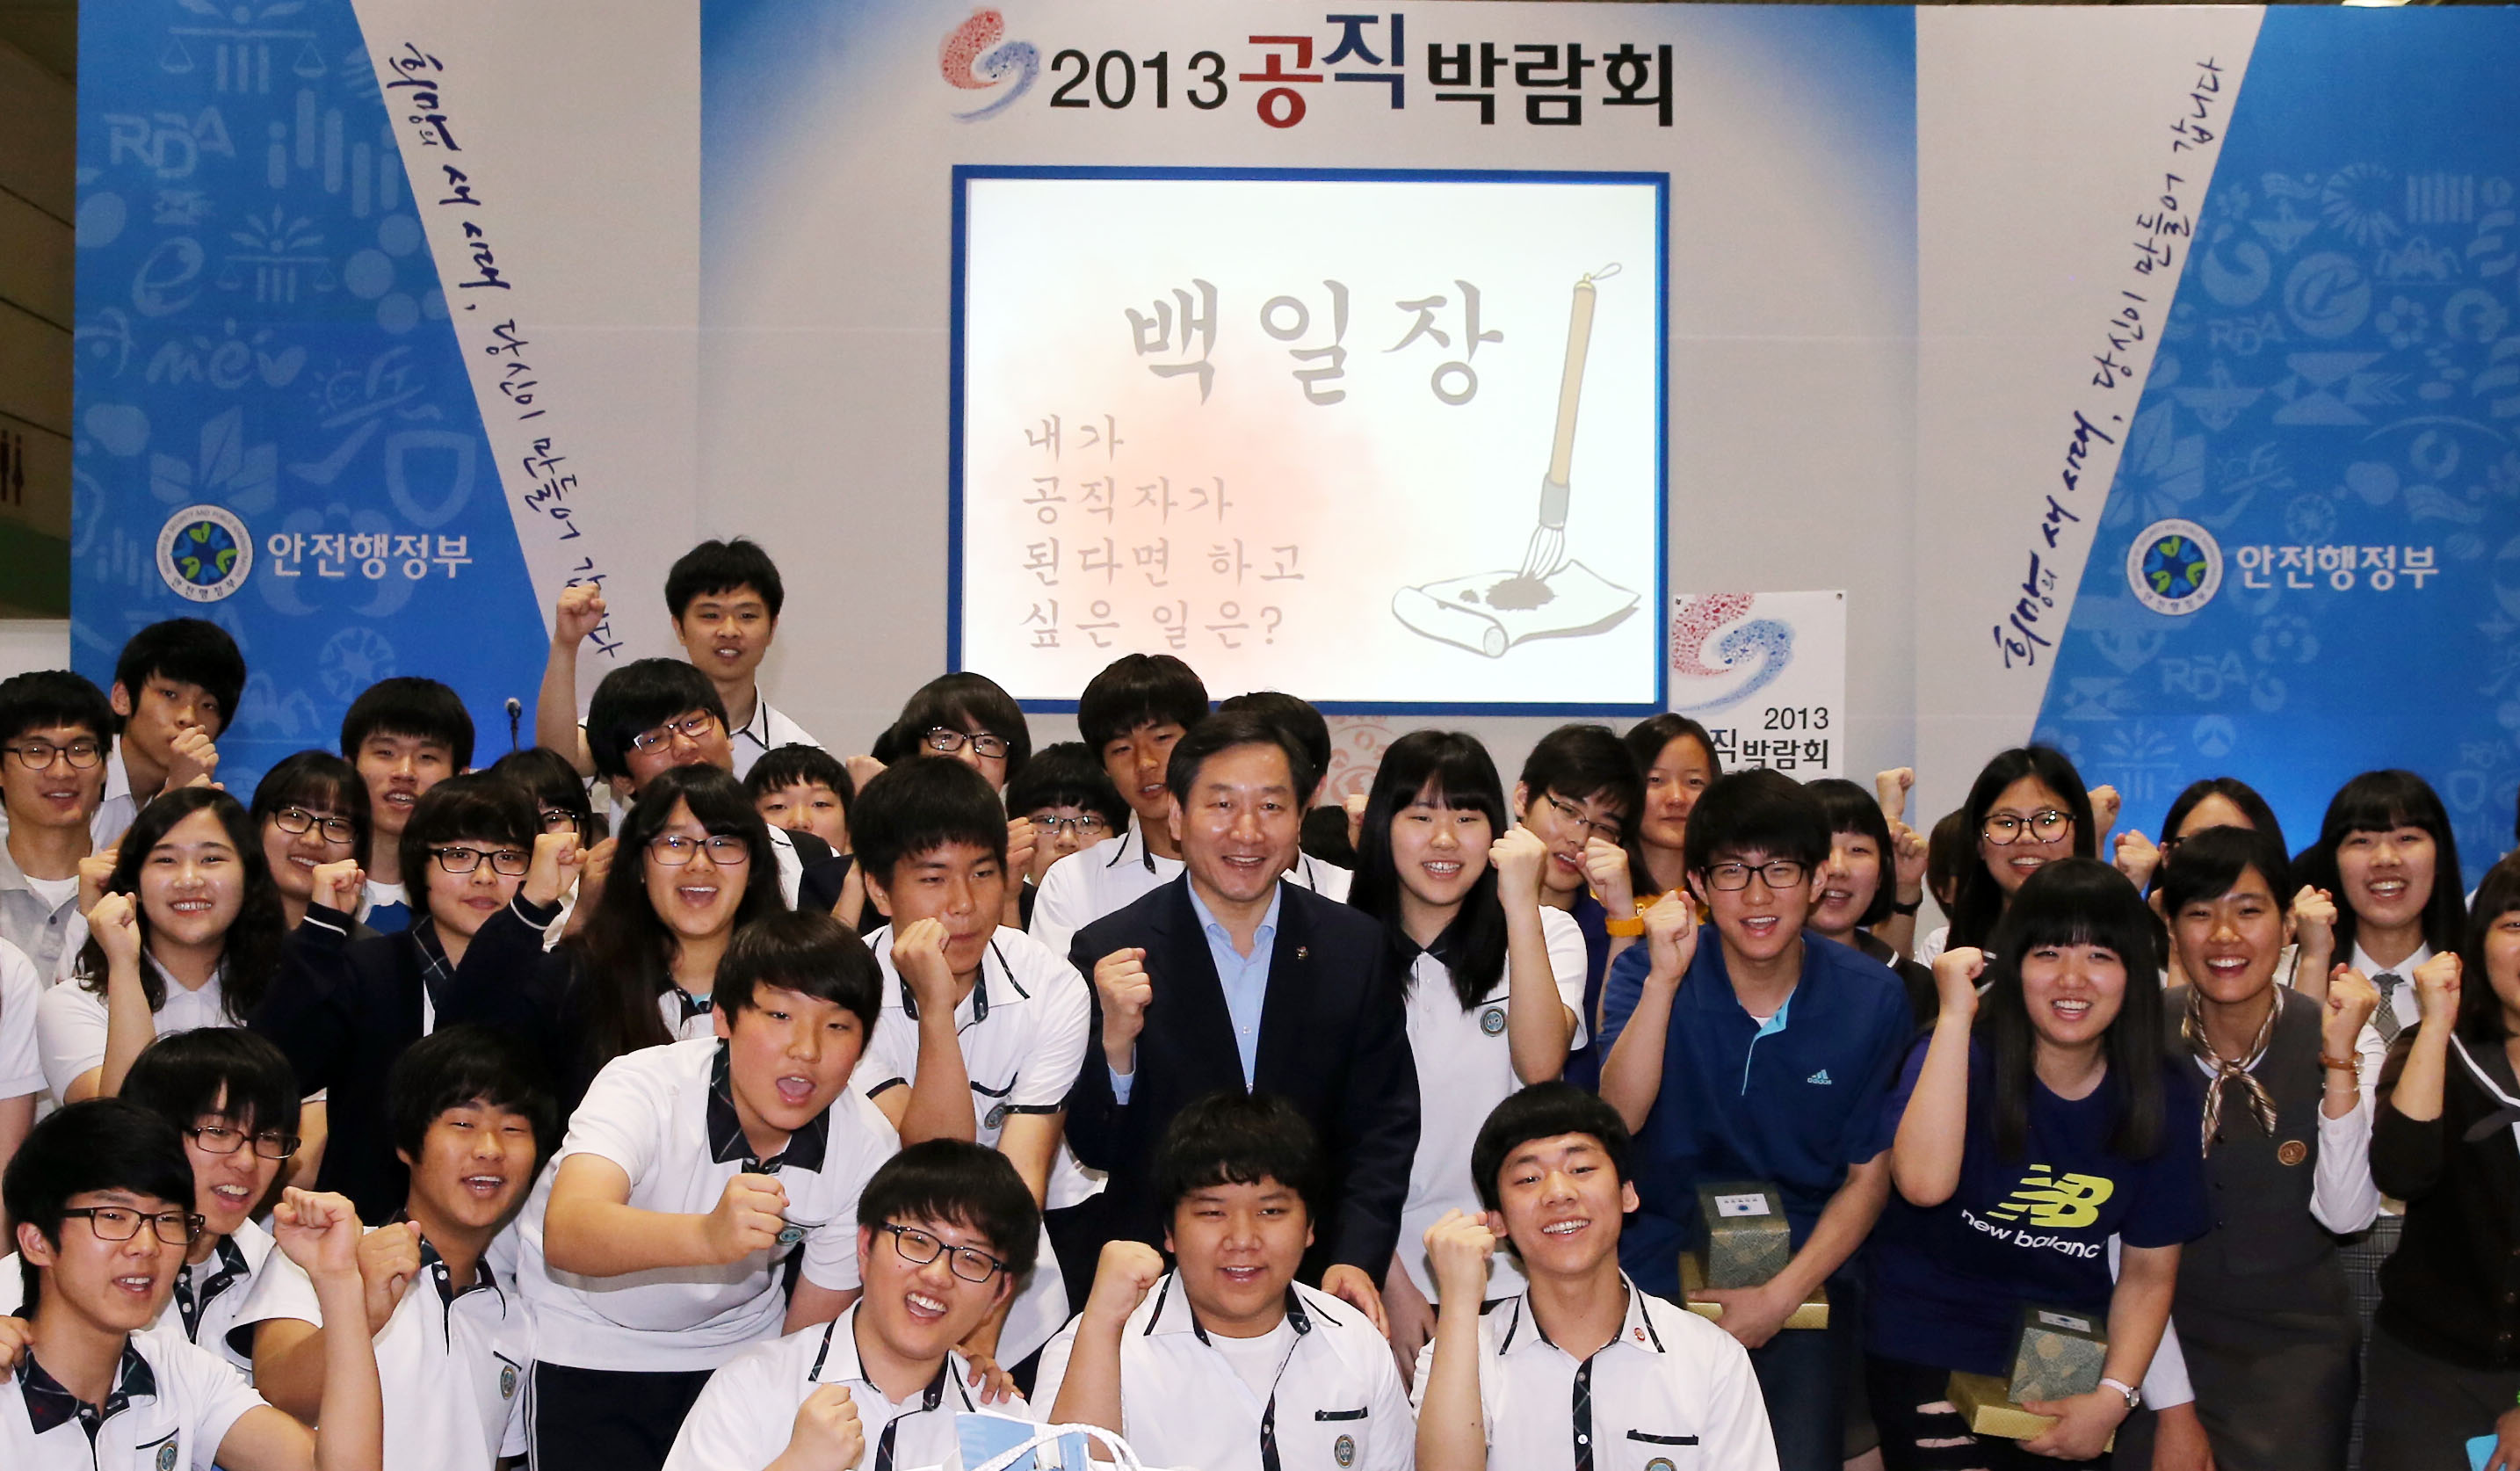 안전행정부, 2013 공직 박람회 개최